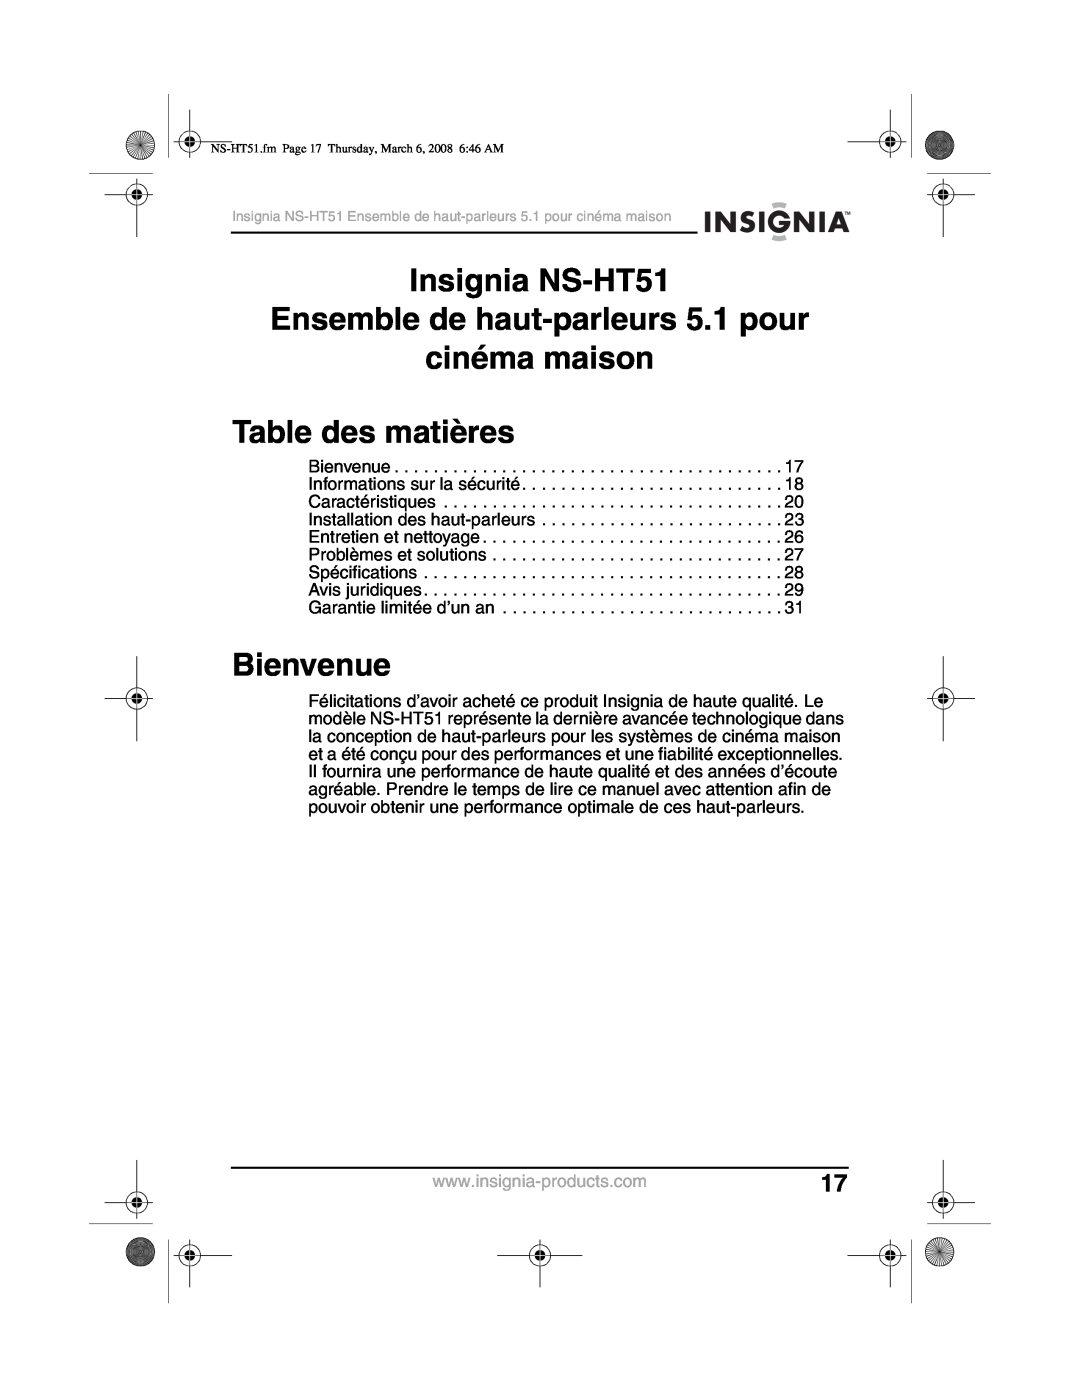 Insignia manual Insignia NS-HT51, Ensemble de haut-parleurs5.1 pour cinéma maison, Table des matières, Bienvenue 